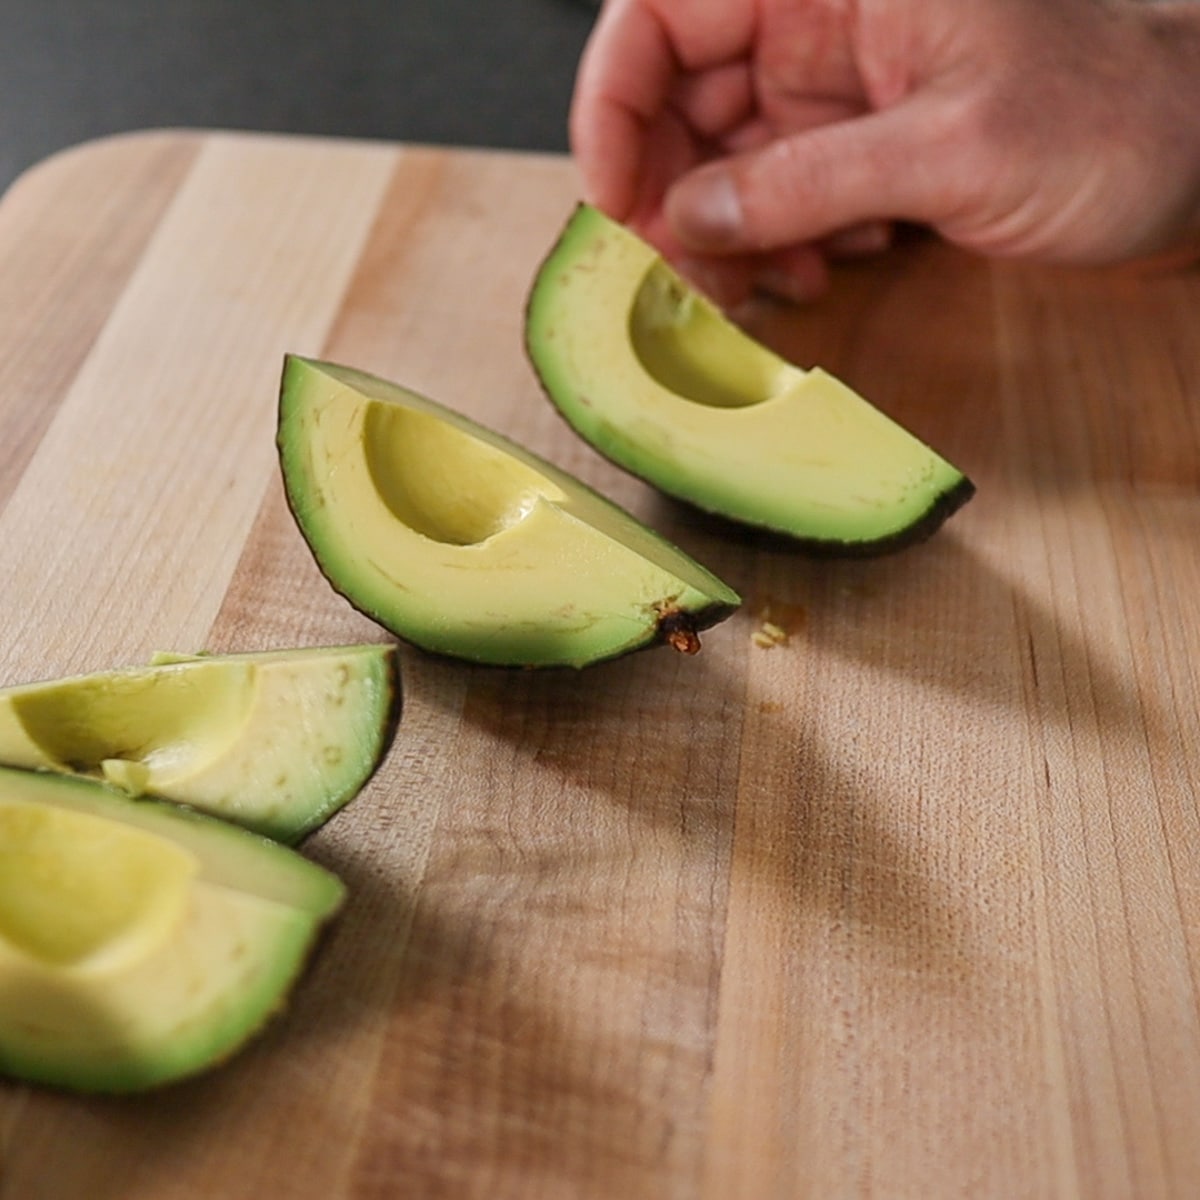 slicing the avocados into four pieces
